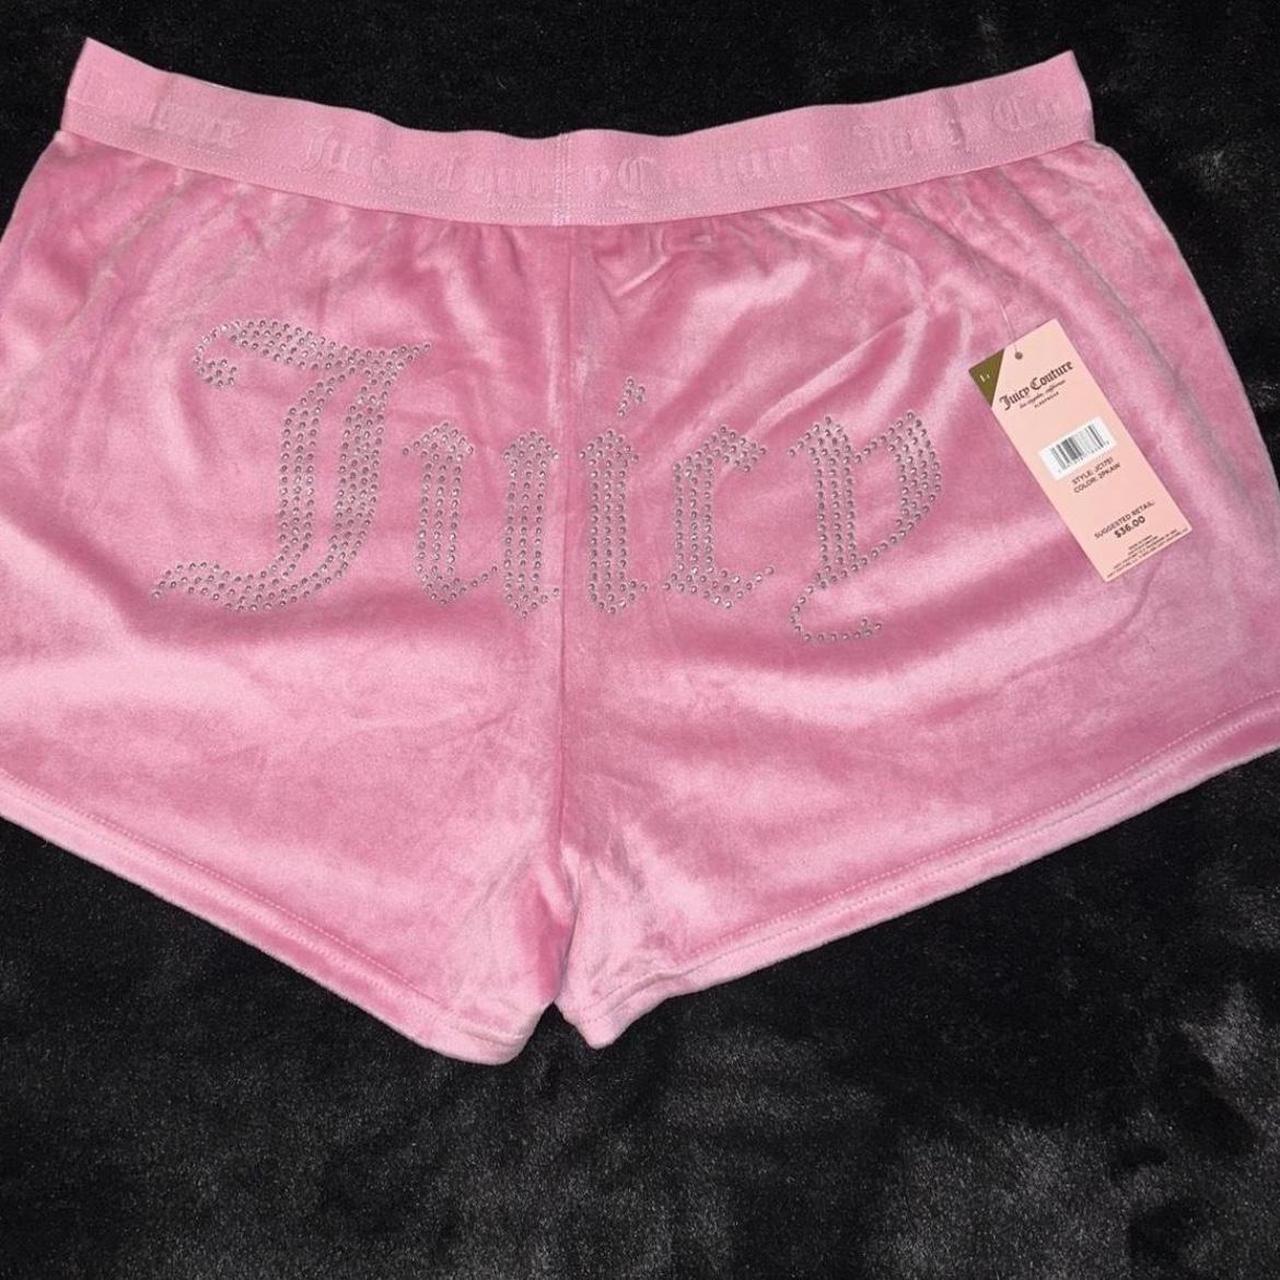 Juicy Couture Rhinestone Sleepwear Shorts #juicy - Depop